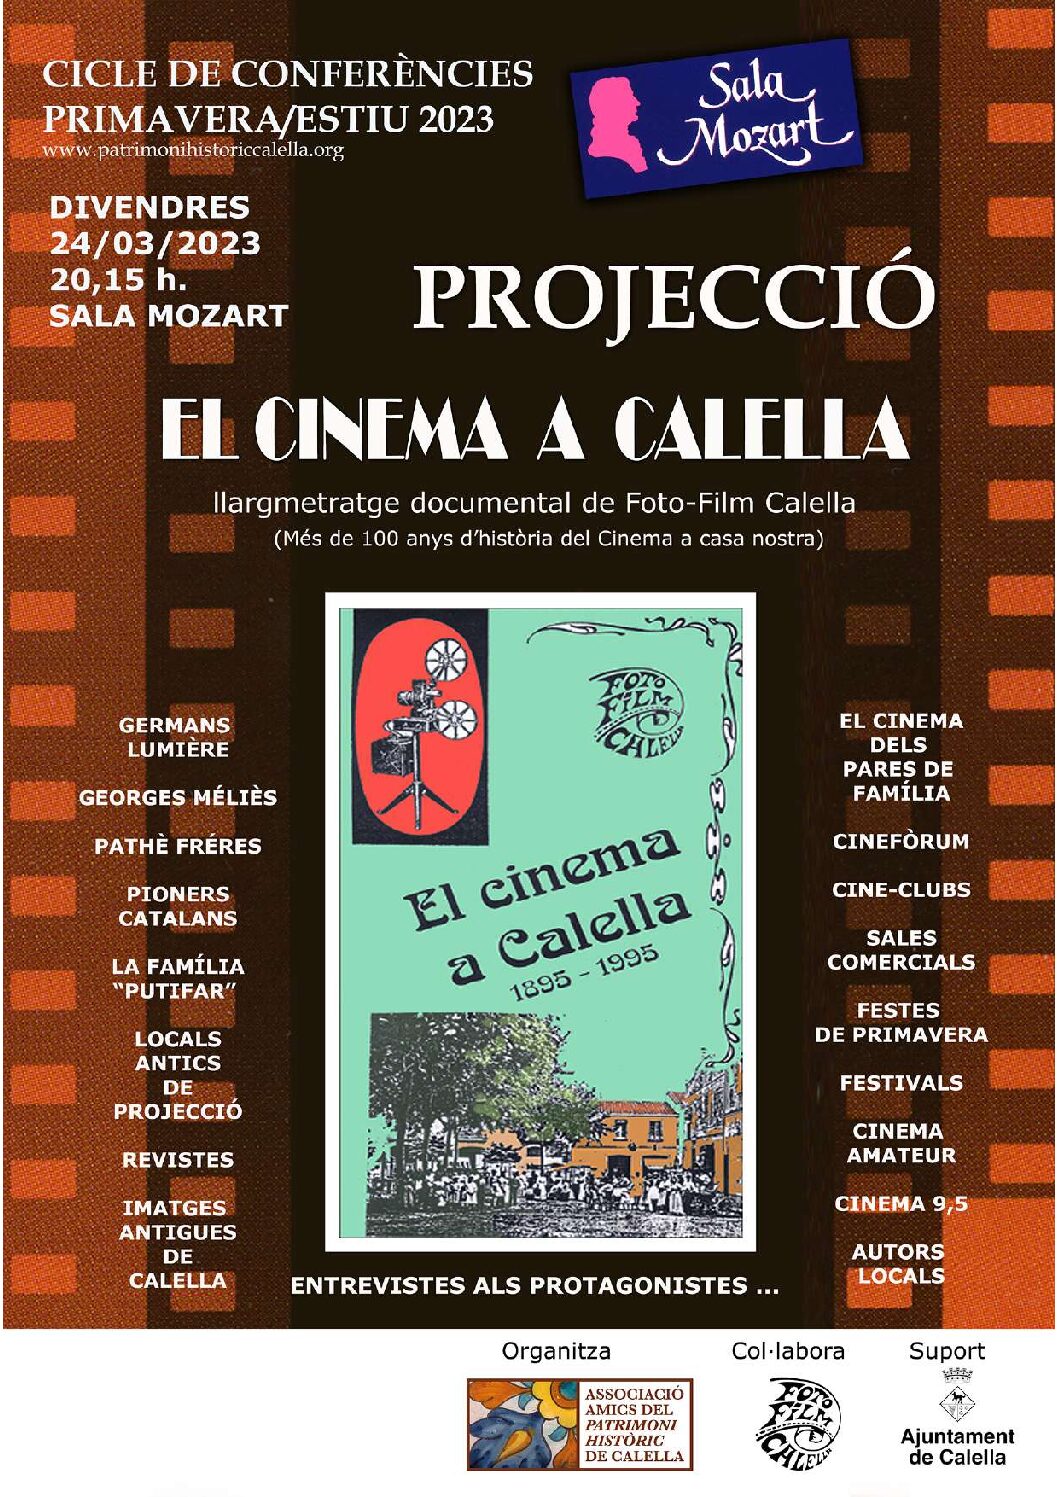 Projecció del llargmetratge organitzat per l’AAPHC: “EL CINEMA A CALELLA, un documental de Foto-Film Calella”